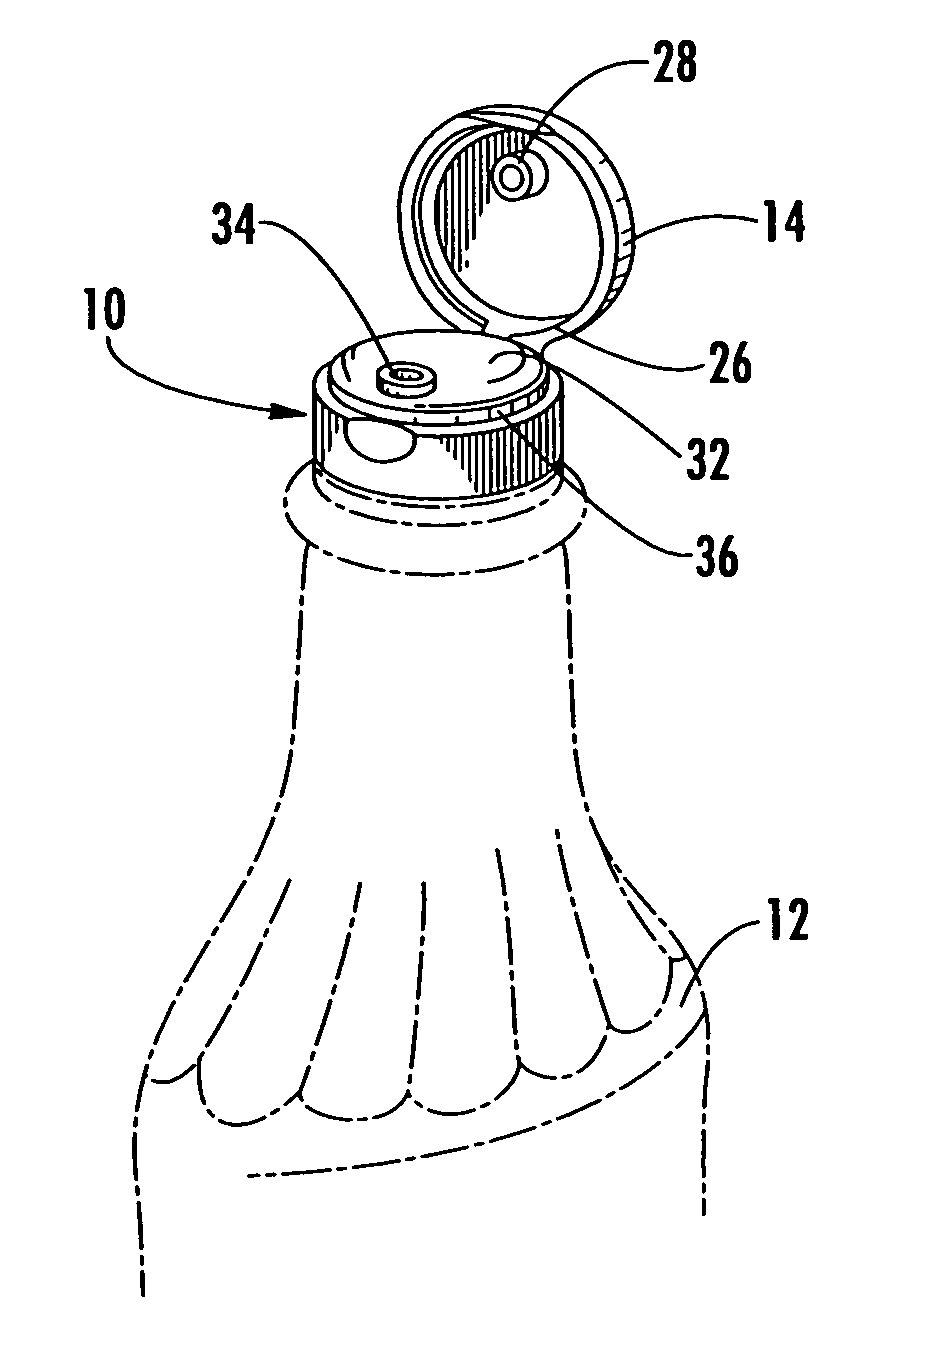 Dispensing closure having complete peripheral seal